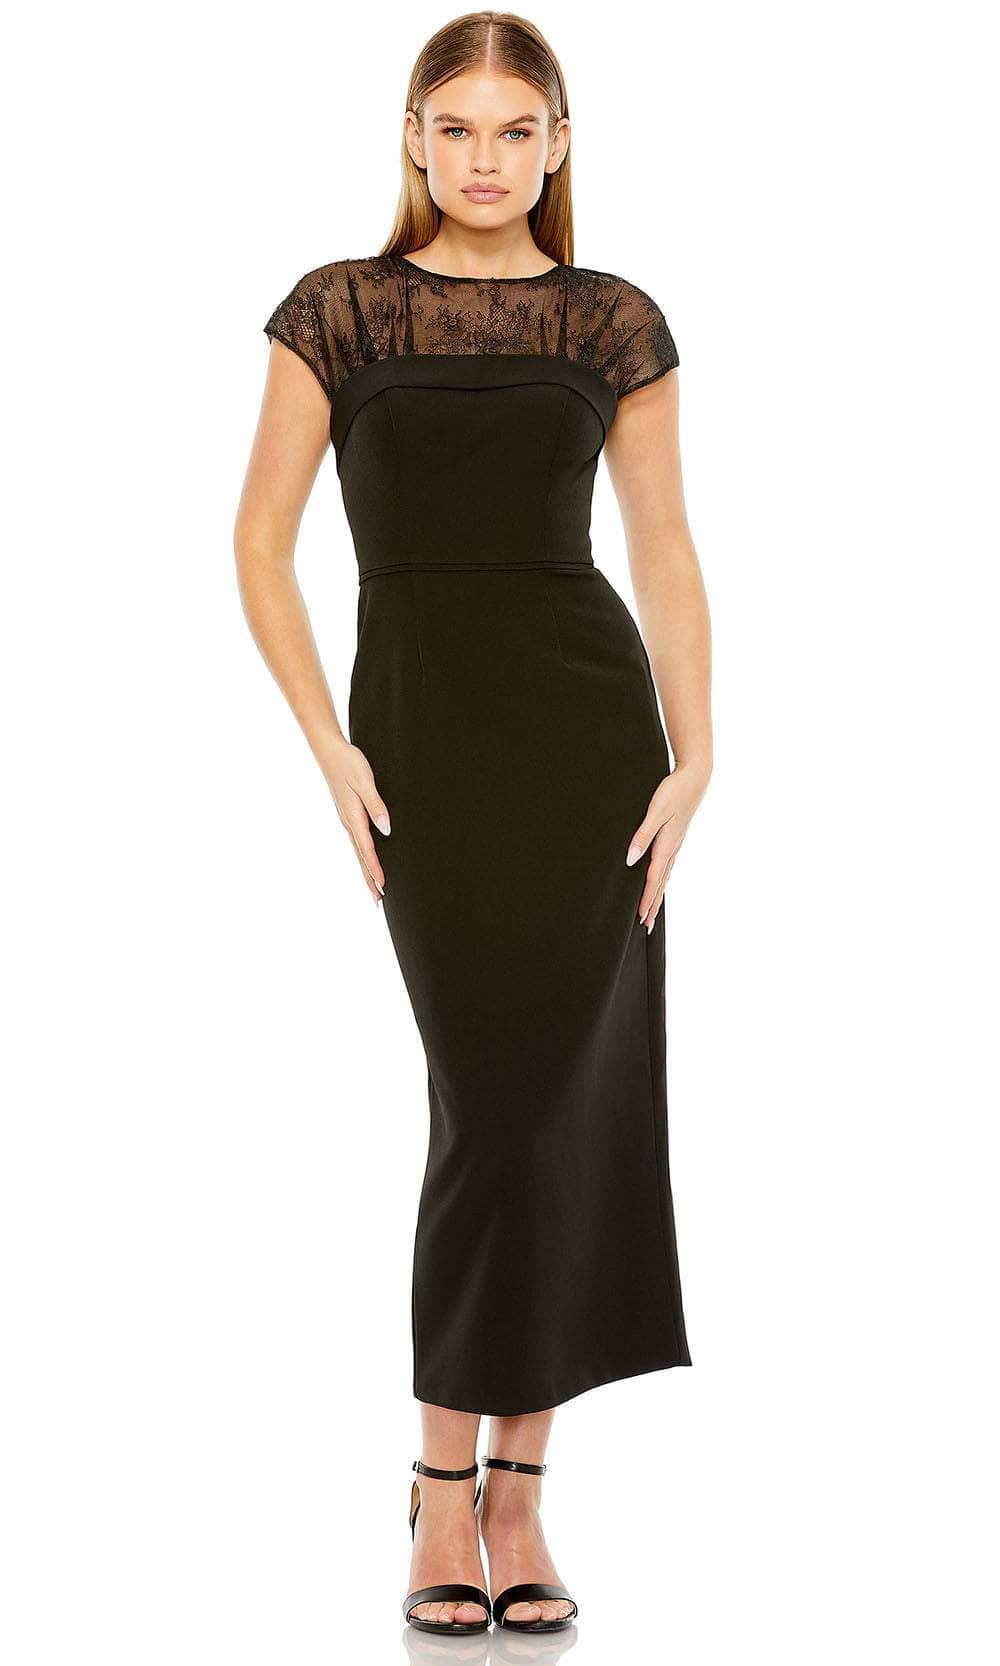 Ieena Duggal 49799 - Lace Illusion Jewel Formal Dress
